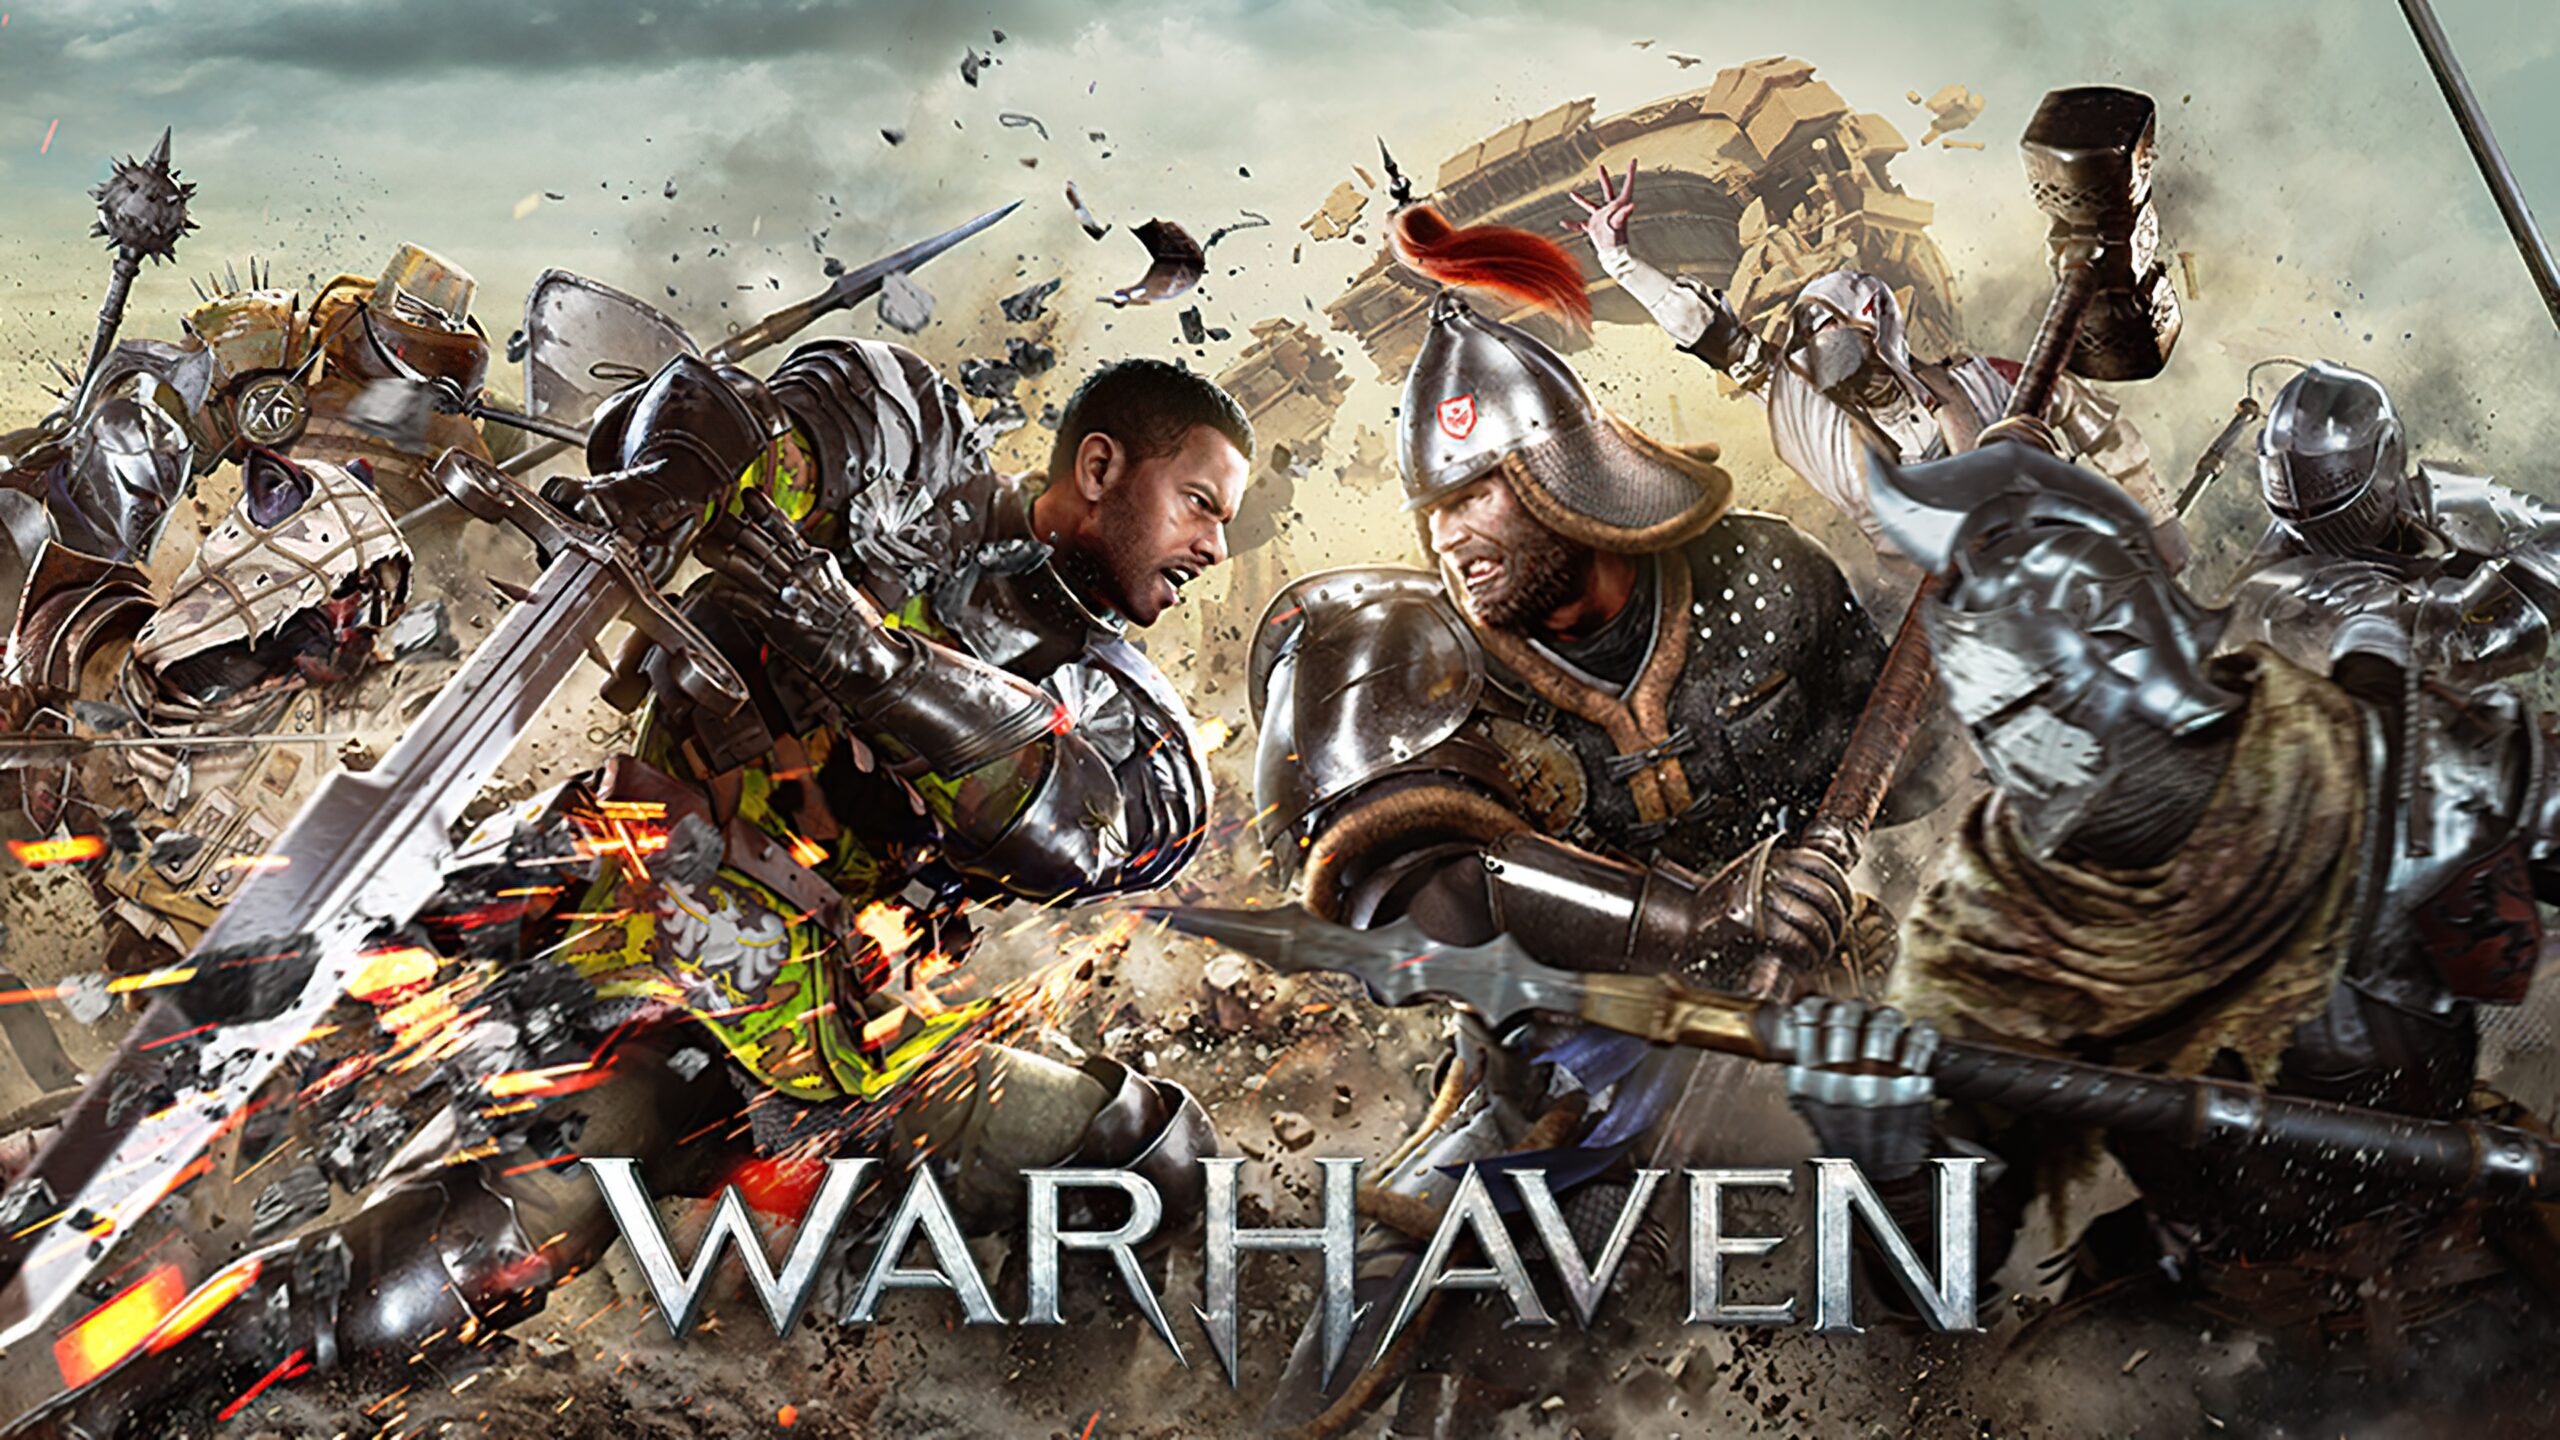 Warhaven-udviklerne har offentliggjort en ny trailer for spillet, hvor de især annoncerede udgivelsesdatoen i tidlig adgang - den 21. september.